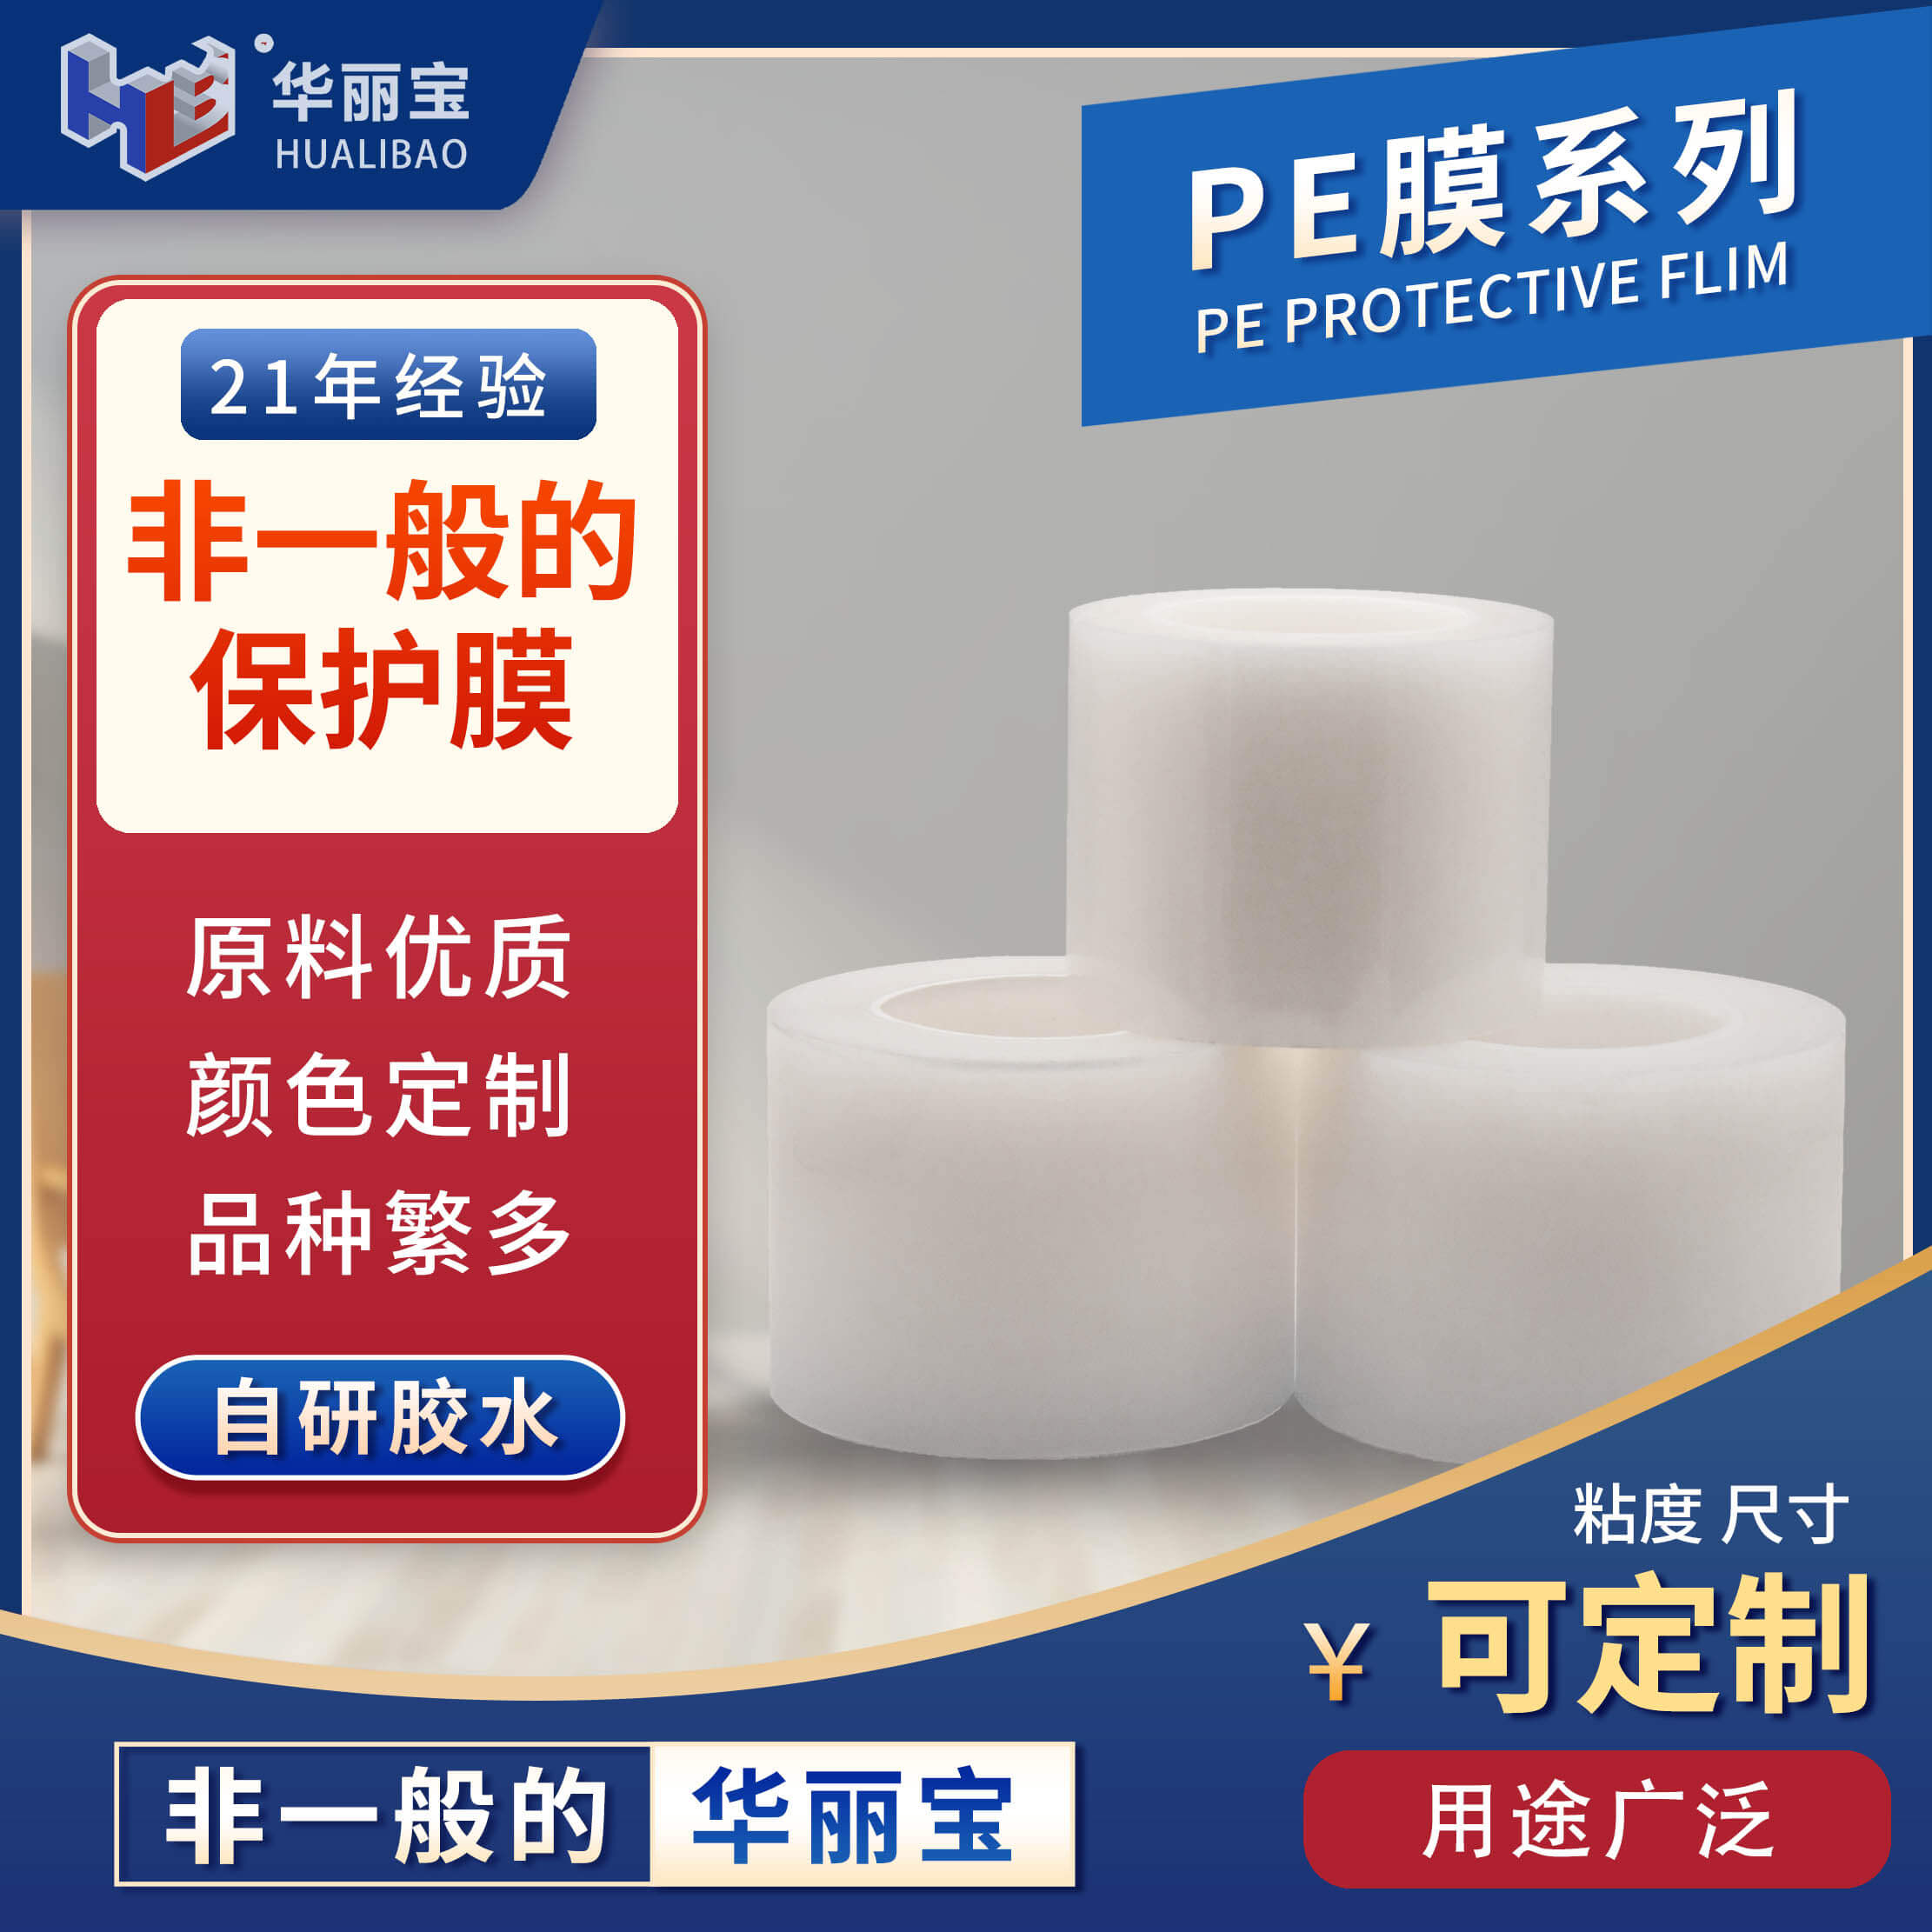 家居膜 PE保护膜 家具膜 磨砂膜 不锈钢保护膜